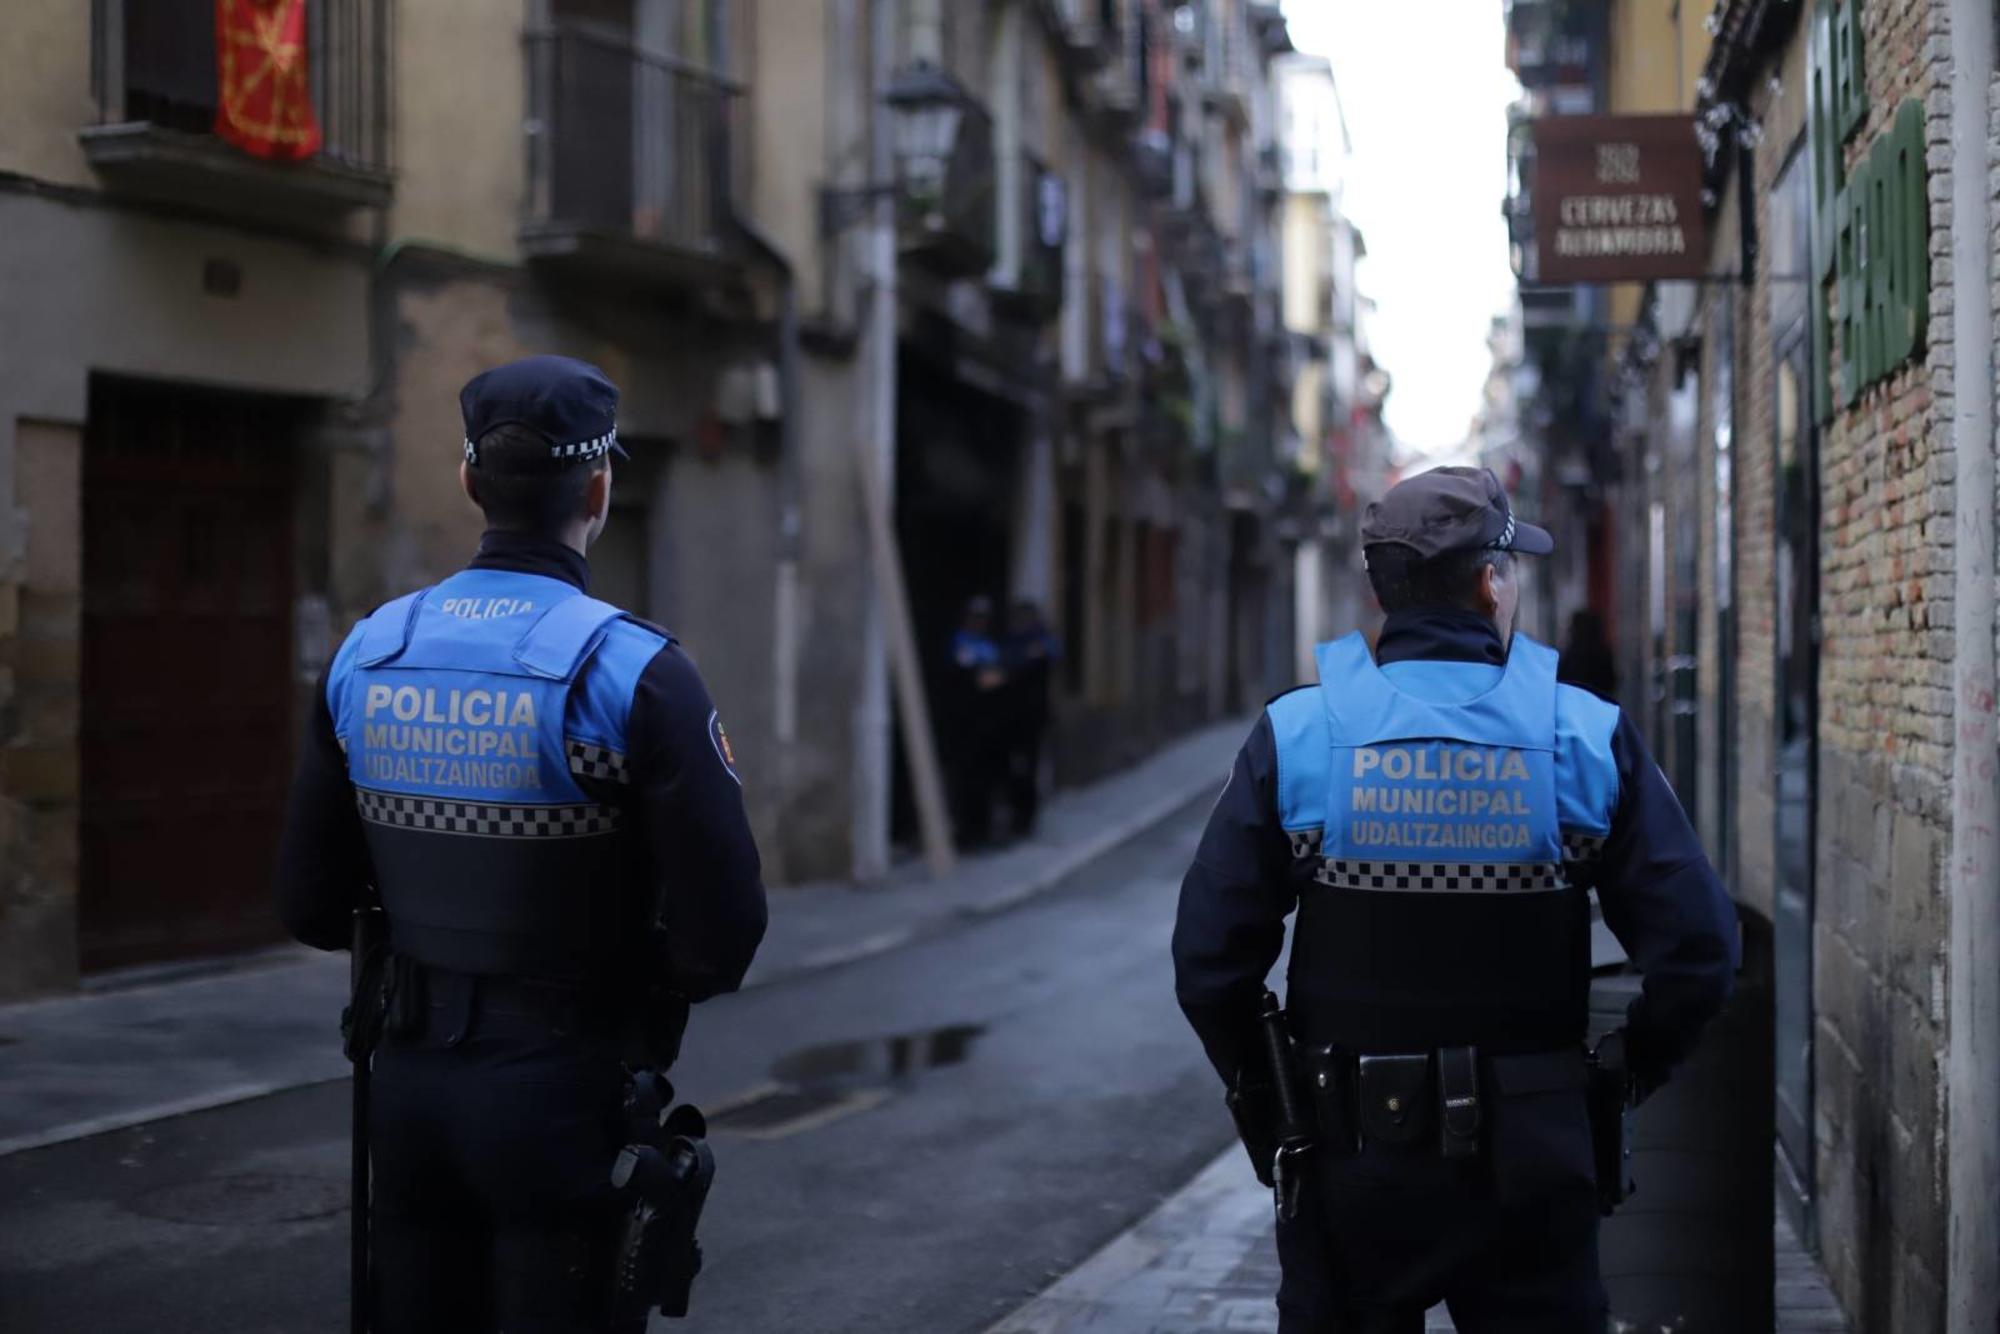 Policía municipal vigila el bloque de viviendas en calle Jarauta este miércoles 15 de noviembre, Pamplona / Konstseilu Sozialista Iruñerria